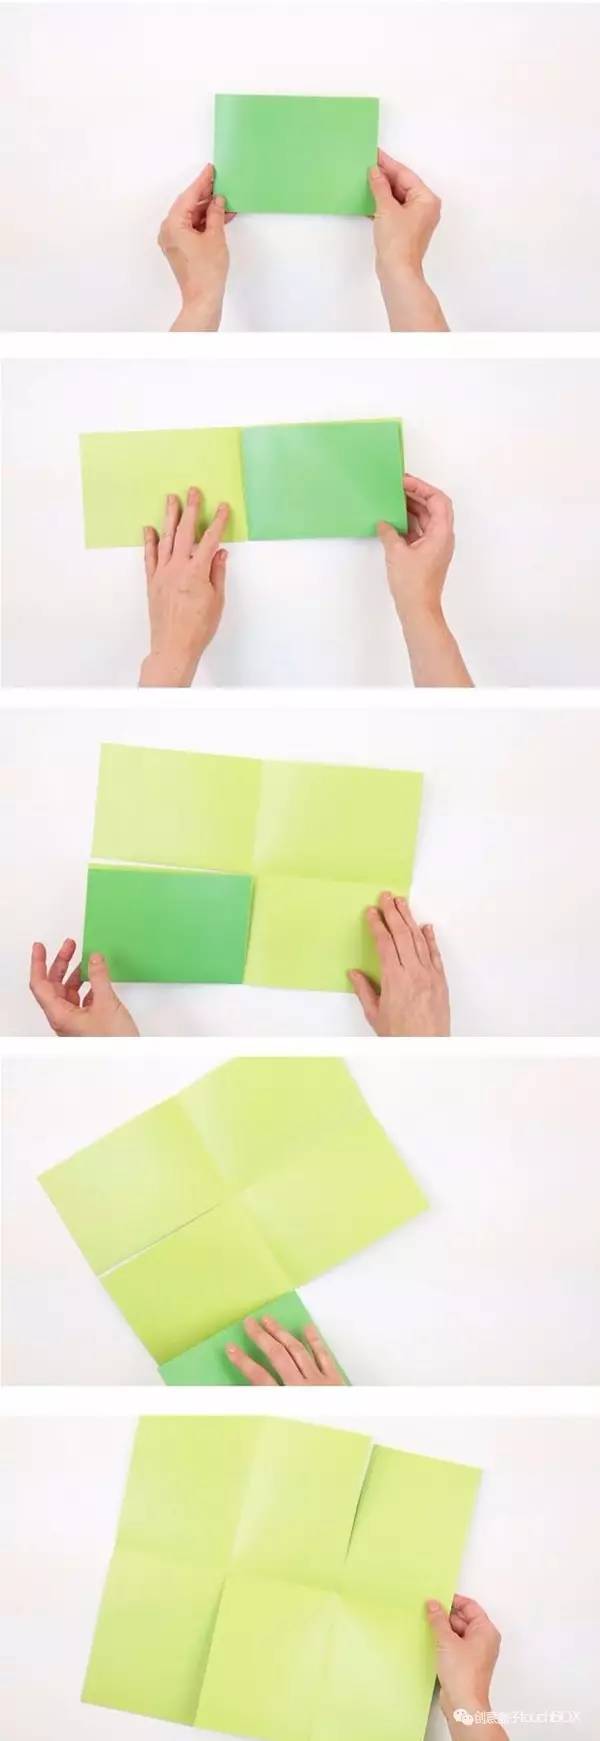 只要你有一张纸,就可以把它变成一本小书的方法:比如这样的六页书